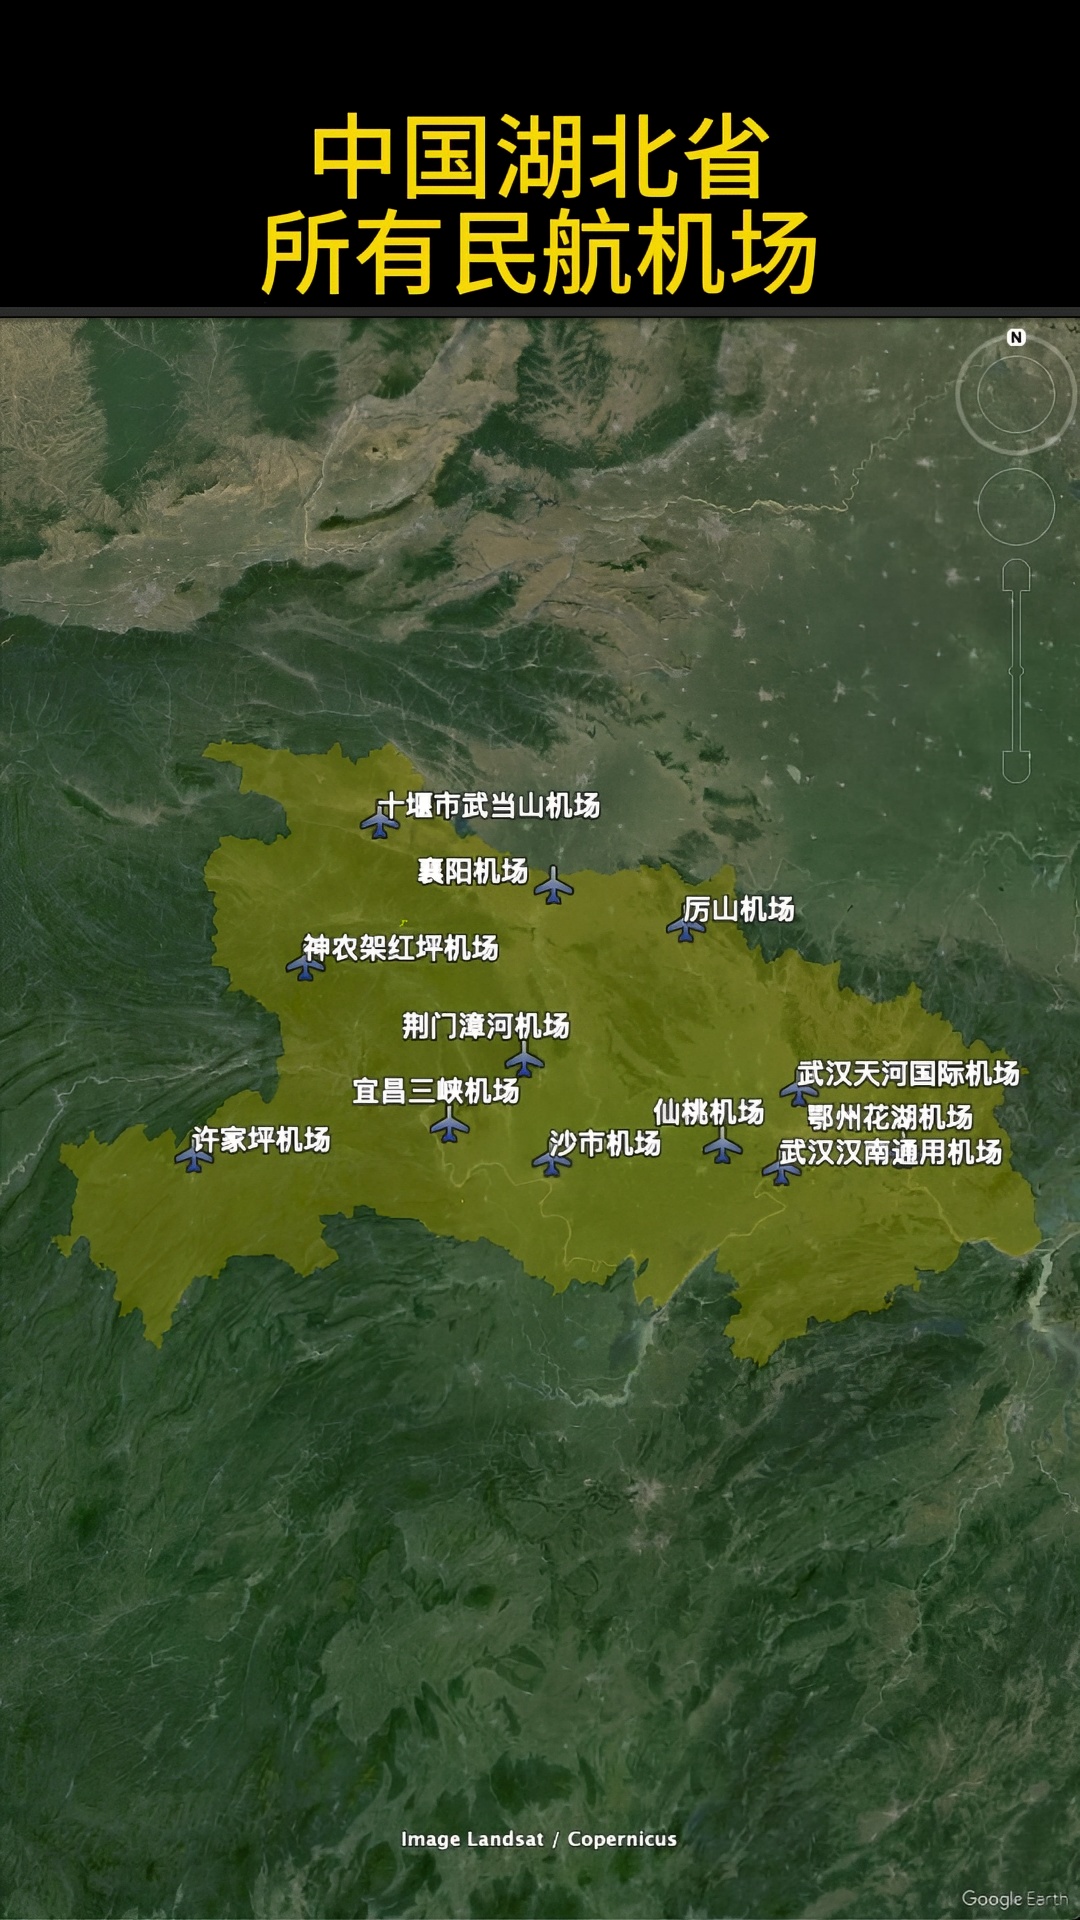 中国湖北省有多少个民航机场？